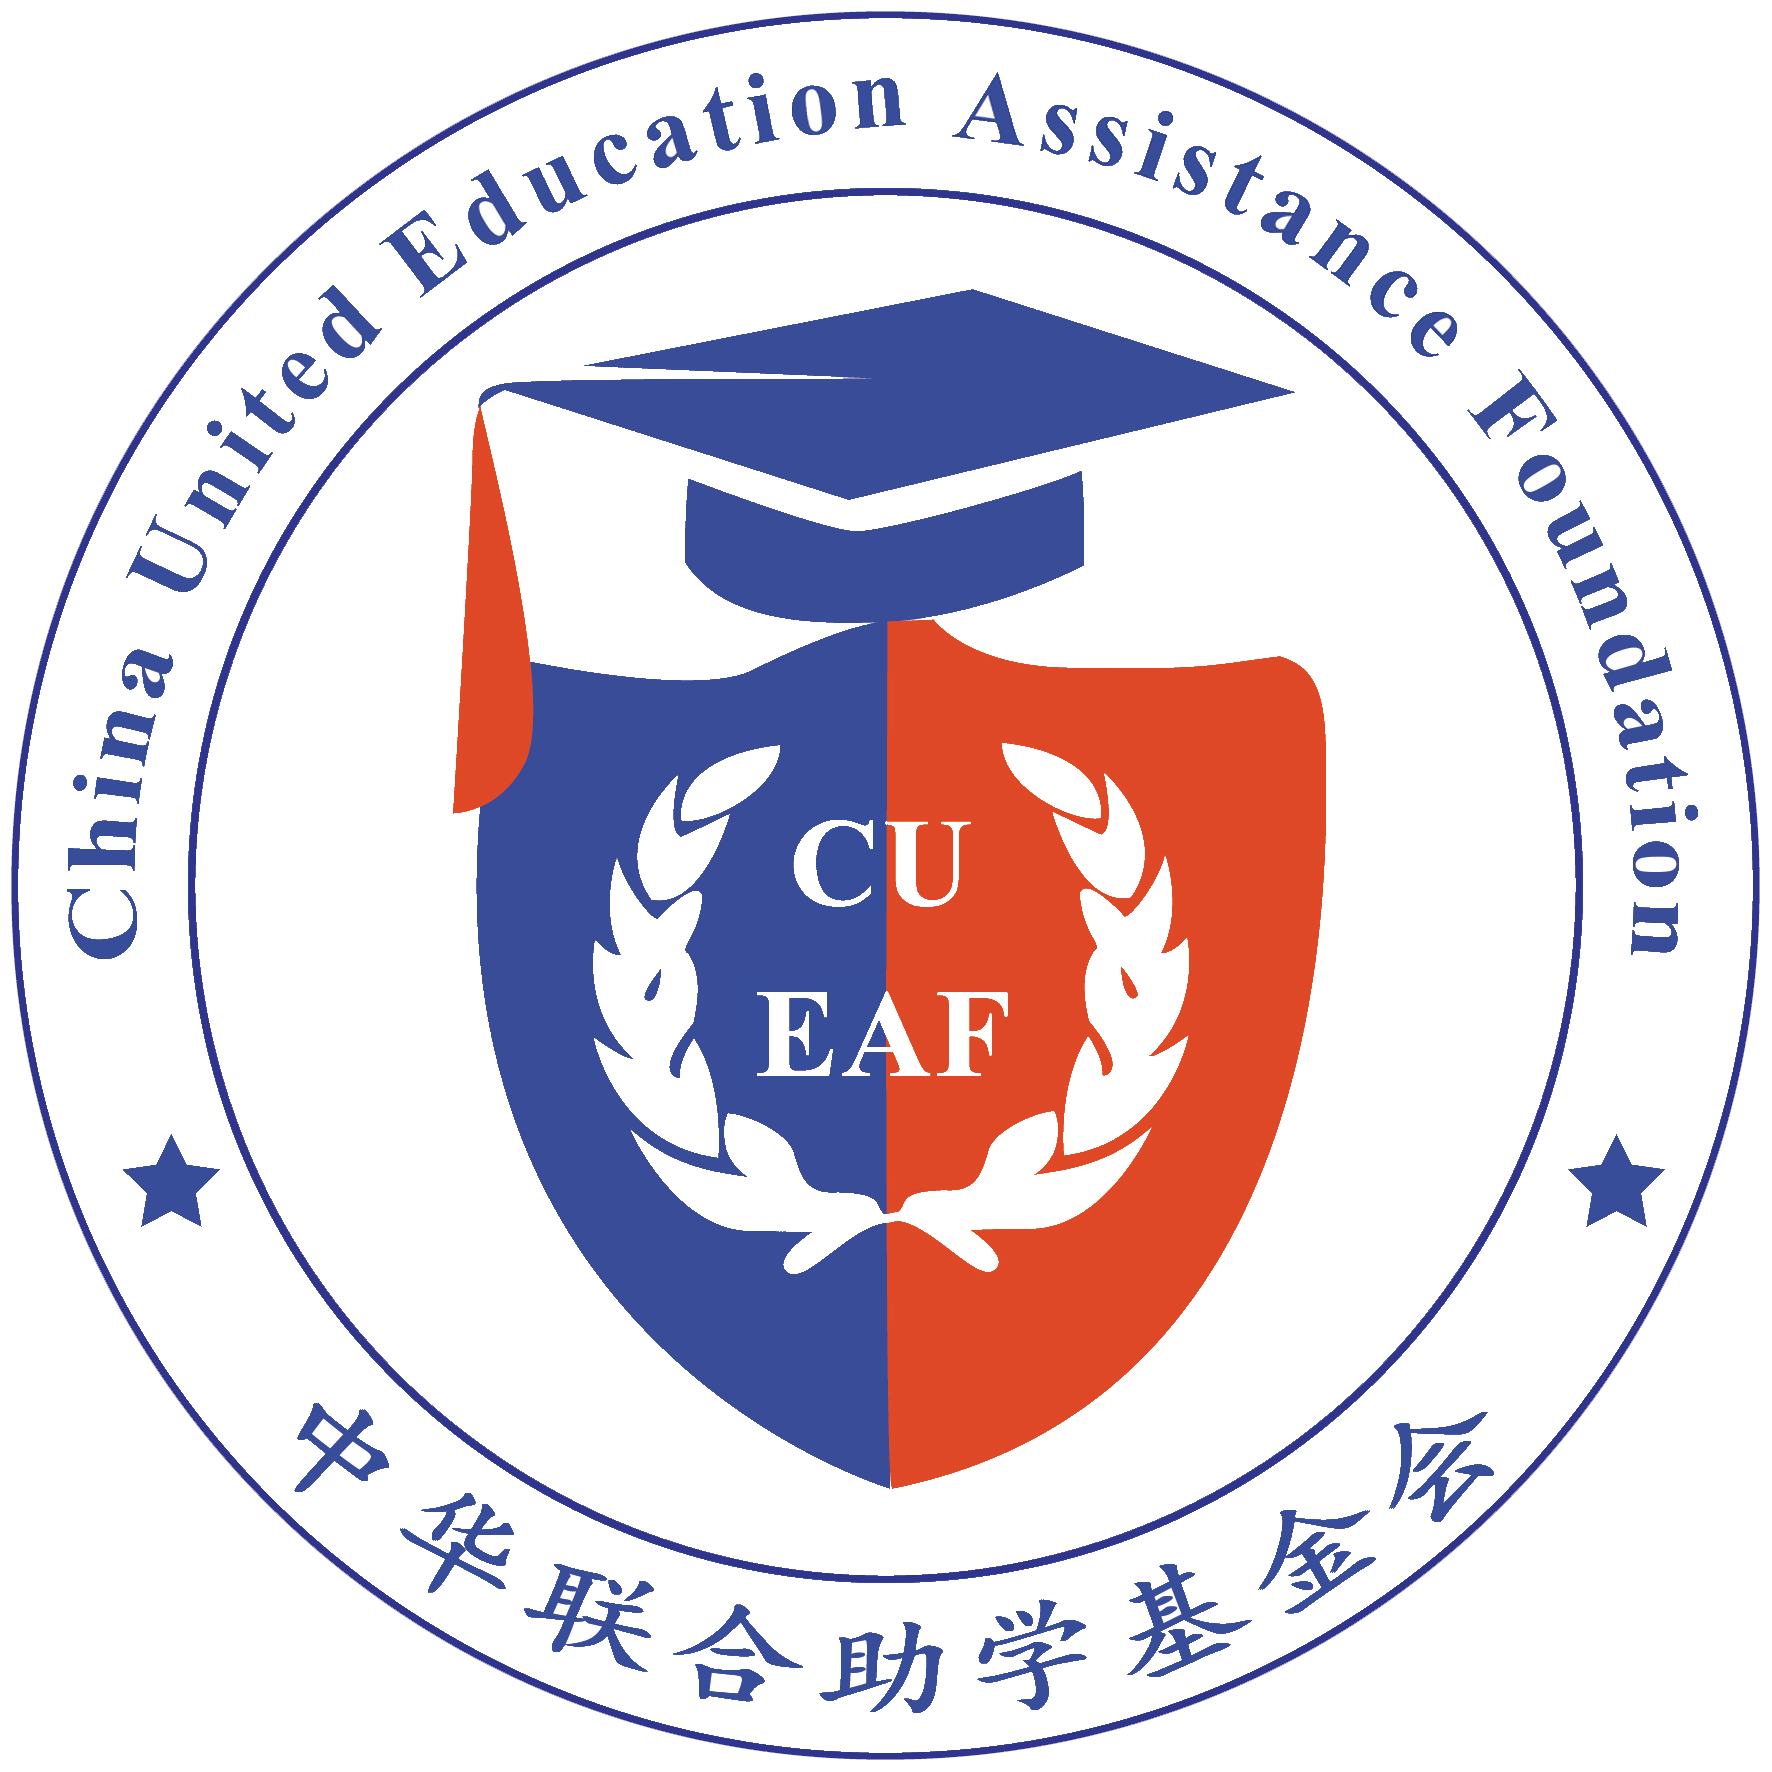 China United Education Assistance Foundation logo